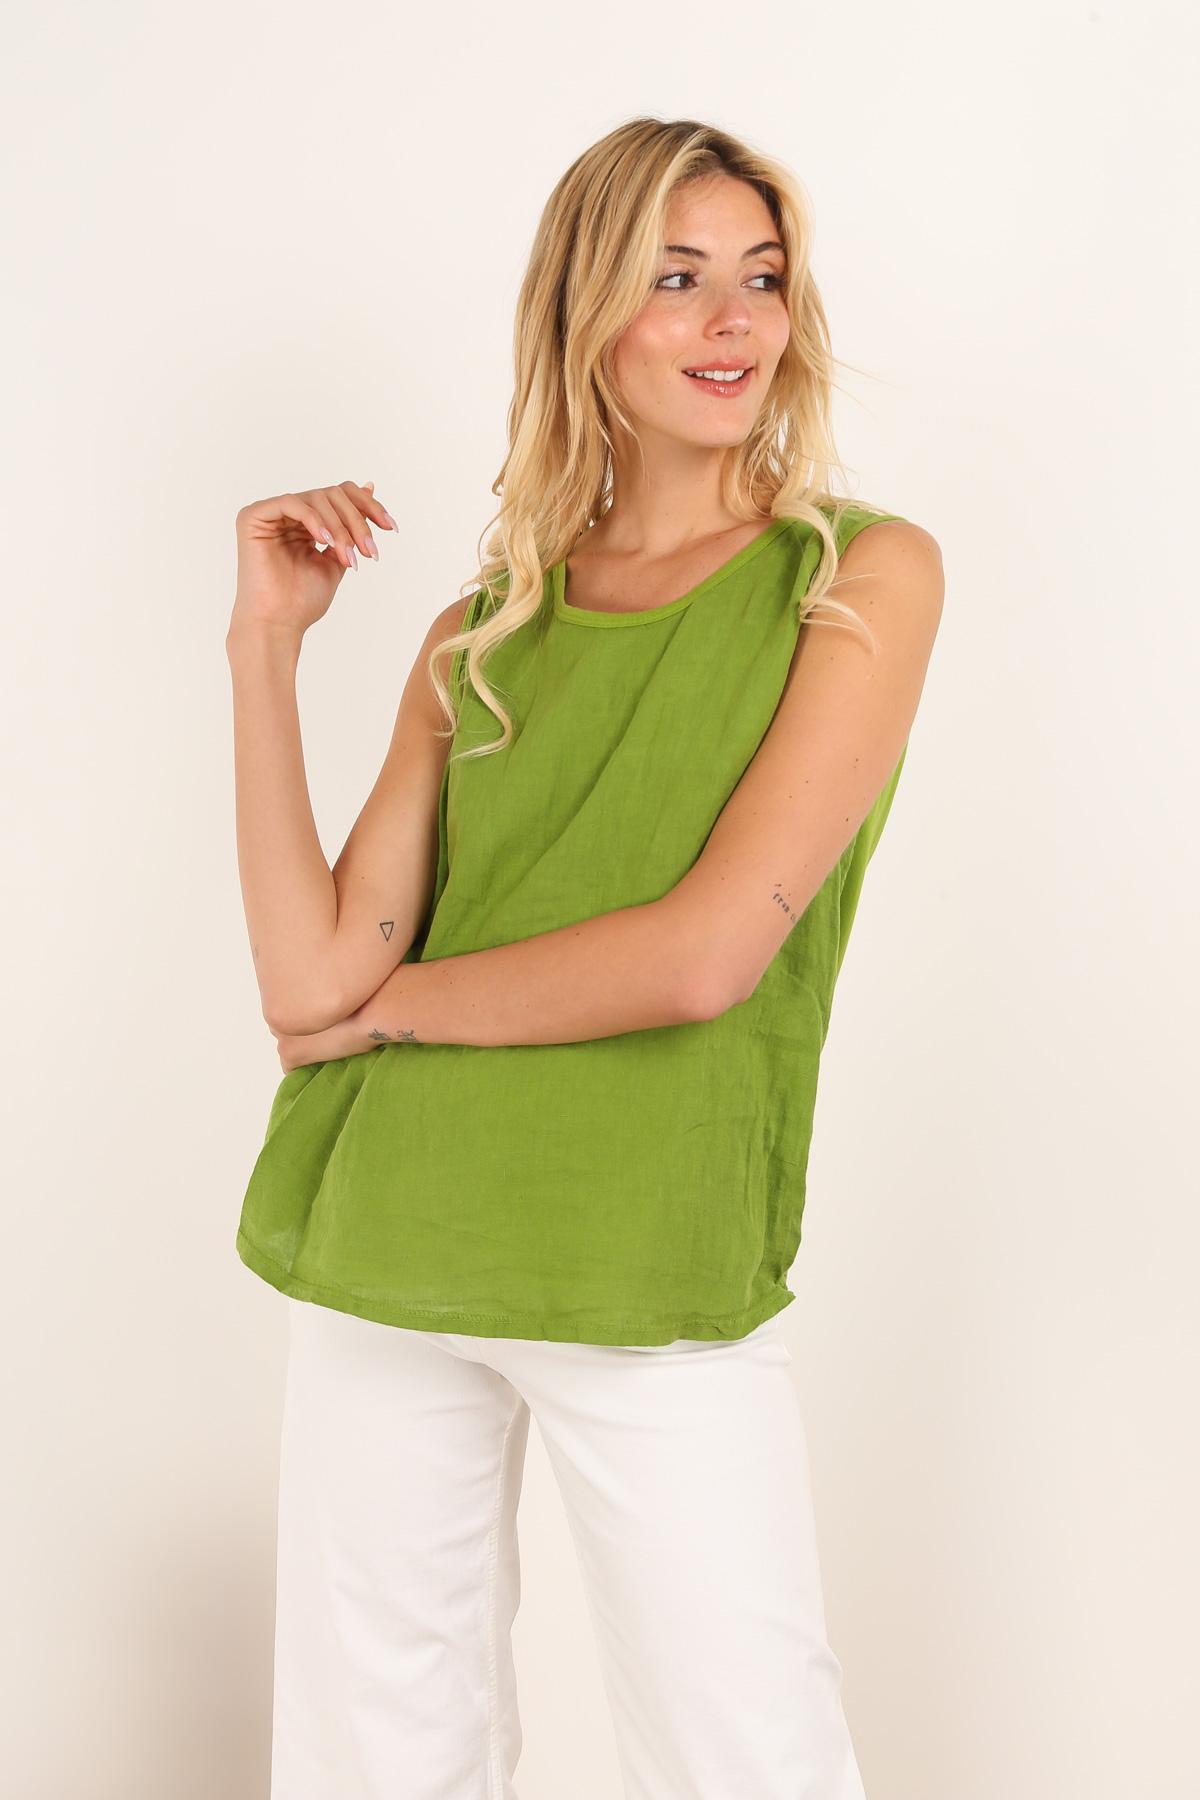 Camisetas sin mangas Mujer Green apple La Maison des fibres naturelles 839052 #c Efashion Paris